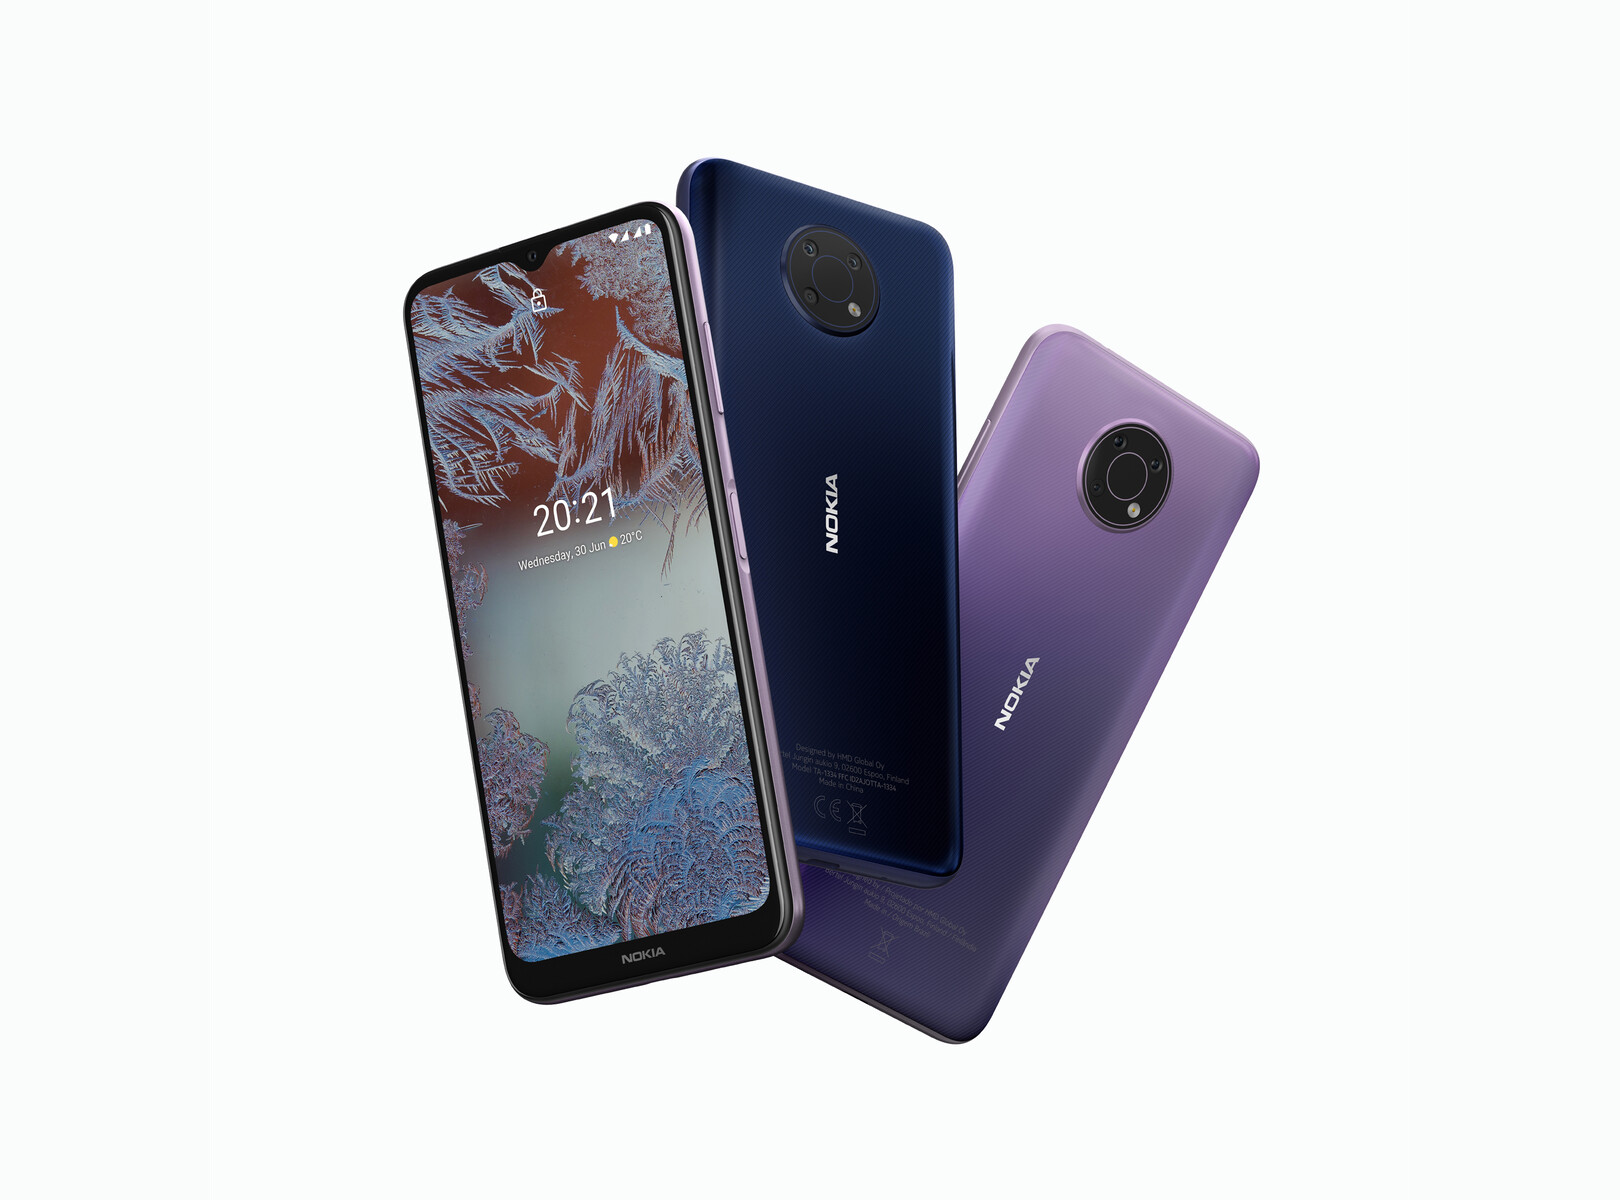 Nokia G Series - Những đánh giá ngoài siêu hấp dẫn về dòng điện thoại Nokia G Series. Bạn đã sẵn sàng khám phá những thông số kỹ thuật đặc biệt và những đánh giá chân thực nhất từ các chuyên gia?